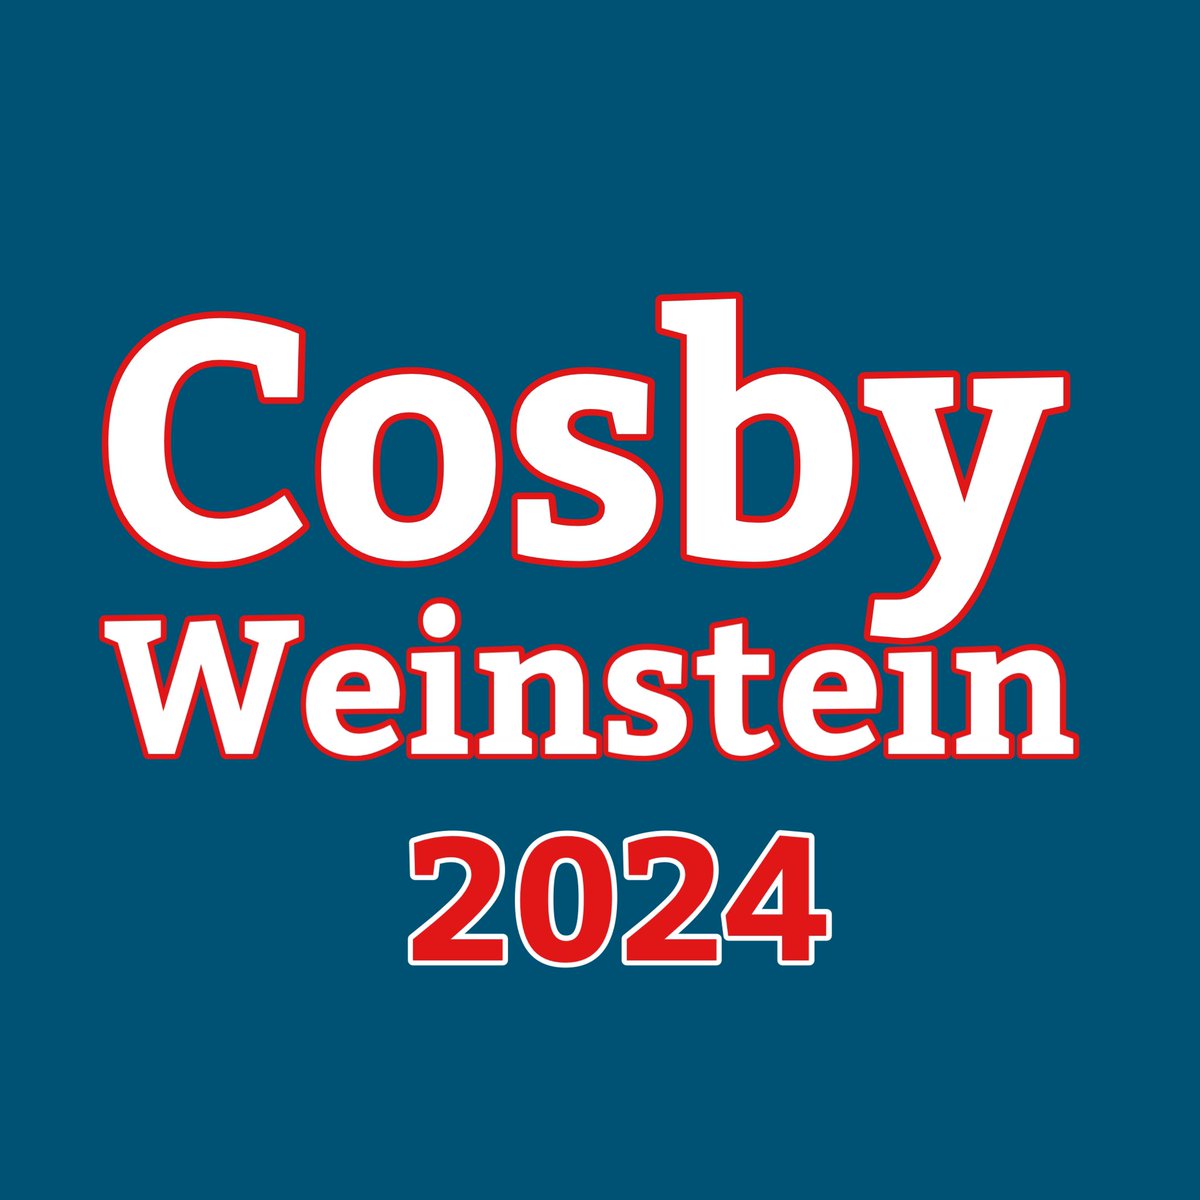 Bill Cosby / Harvey Weinstein 2024 https://t.co/Mi5rEj0uR4 https://t.co/umC4gKrCuk